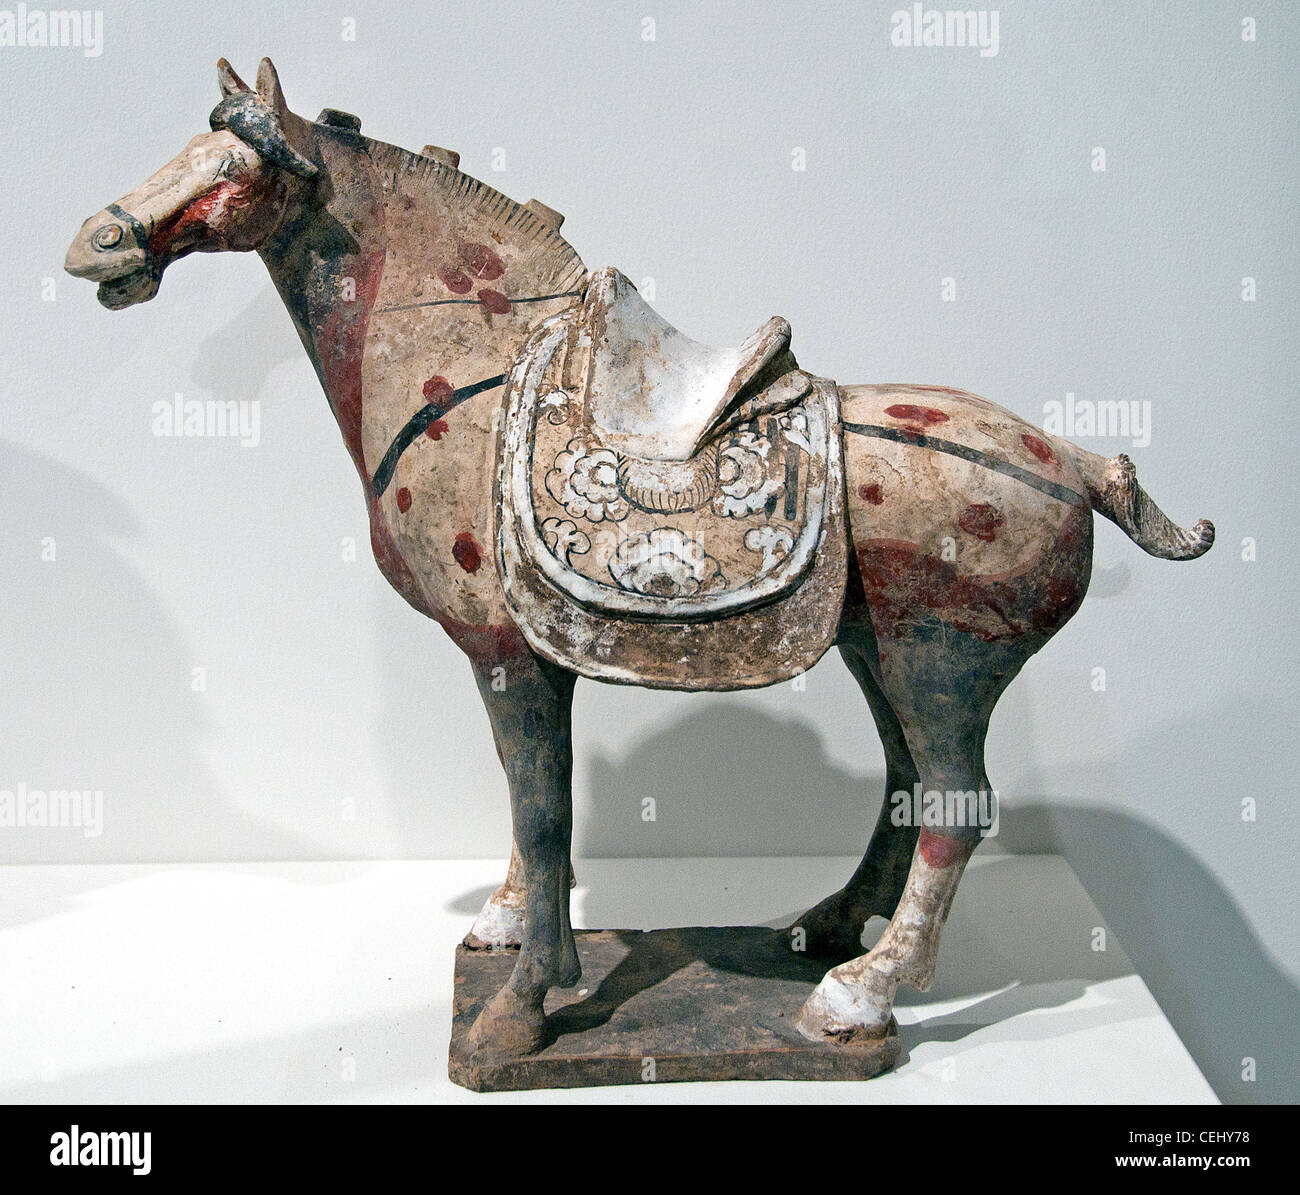 Selle de cheval de la dynastie Tang poterie céramique polychrome 8 siècle chinois de Chine du nord Banque D'Images